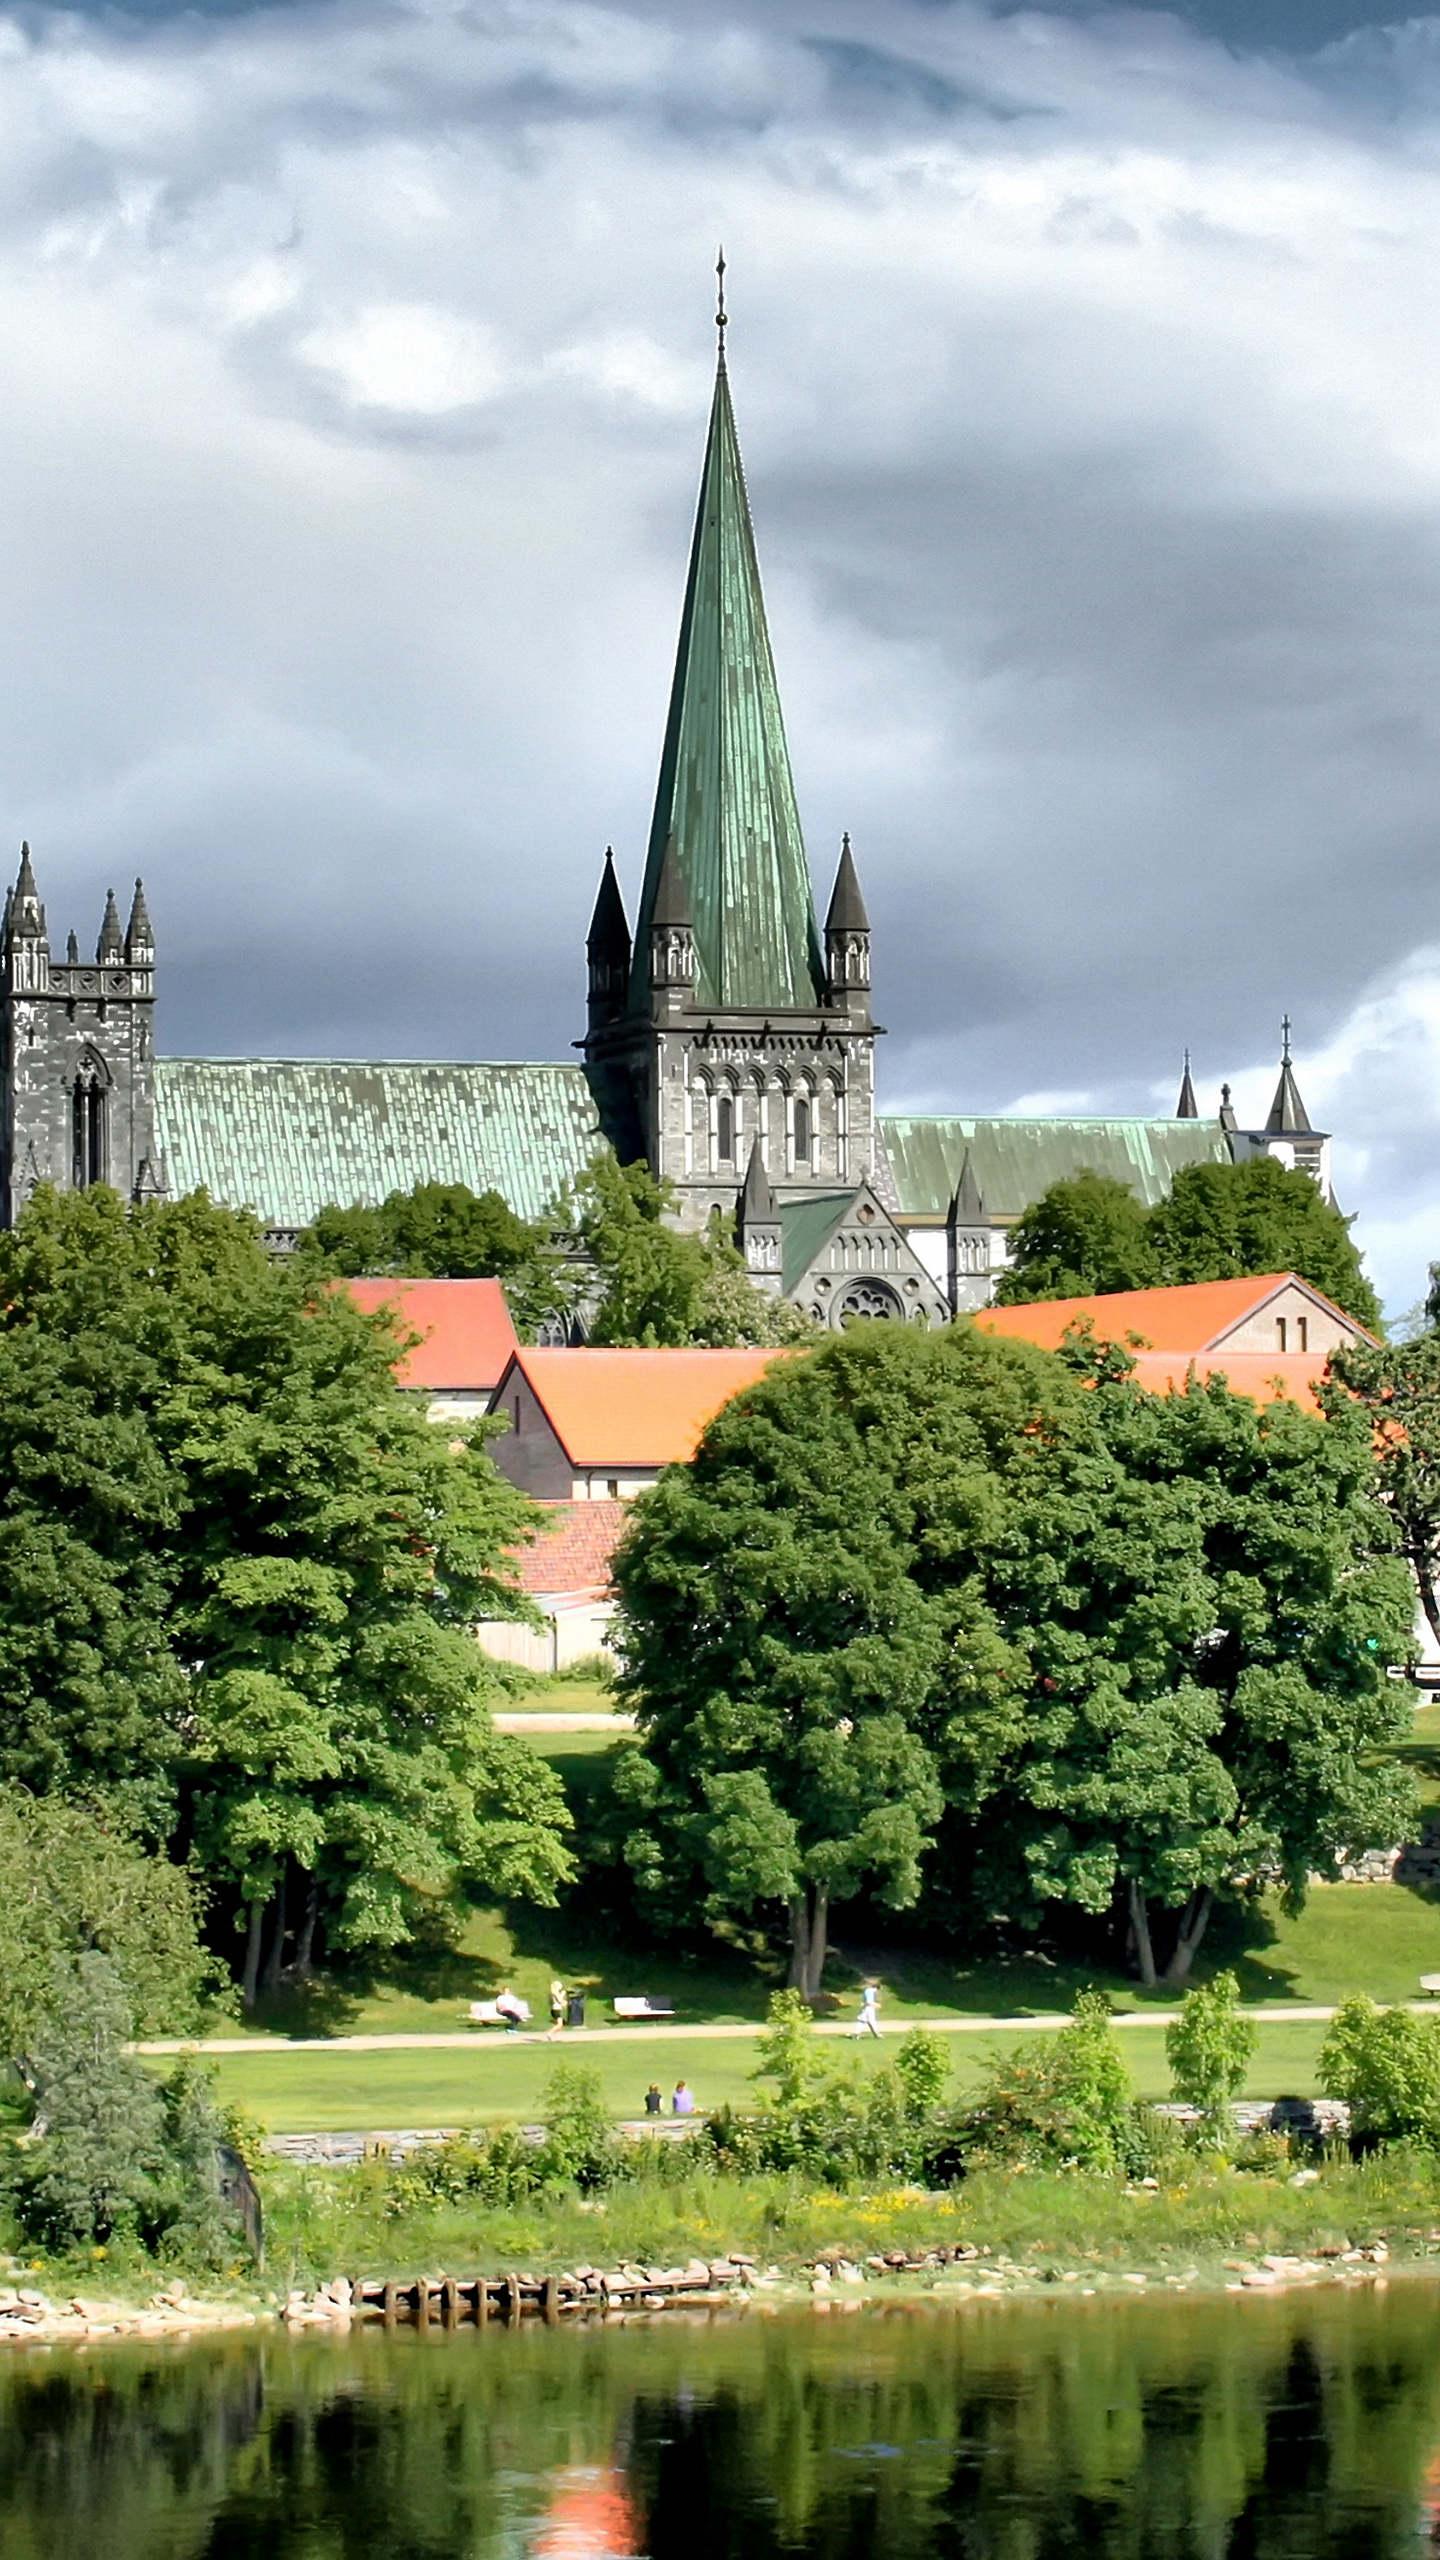 挪威尼德罗斯大教堂,是特隆赫姆城内著名的大教堂,也是斯堪的纳维亚